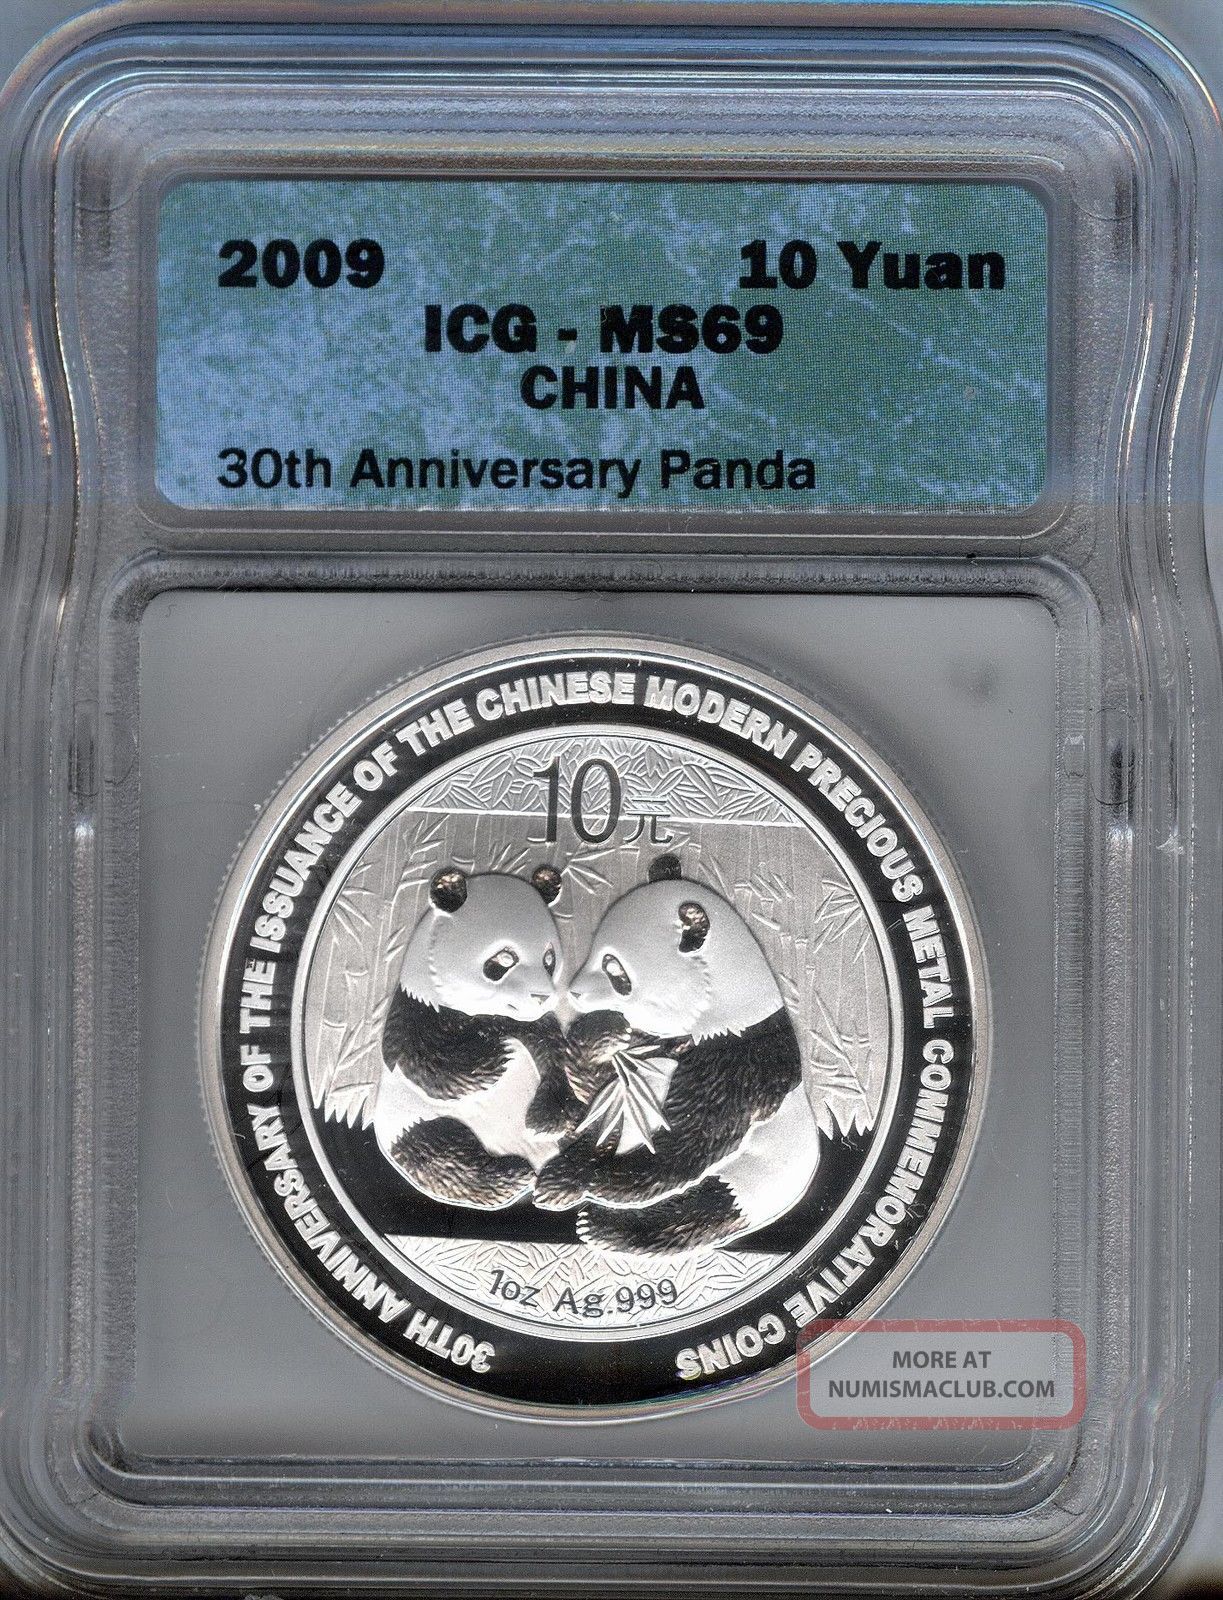 2009 Silver Panda - 10 Yuan - Gem Uncirculated Icg Ms69 - 30th Anniversary China photo